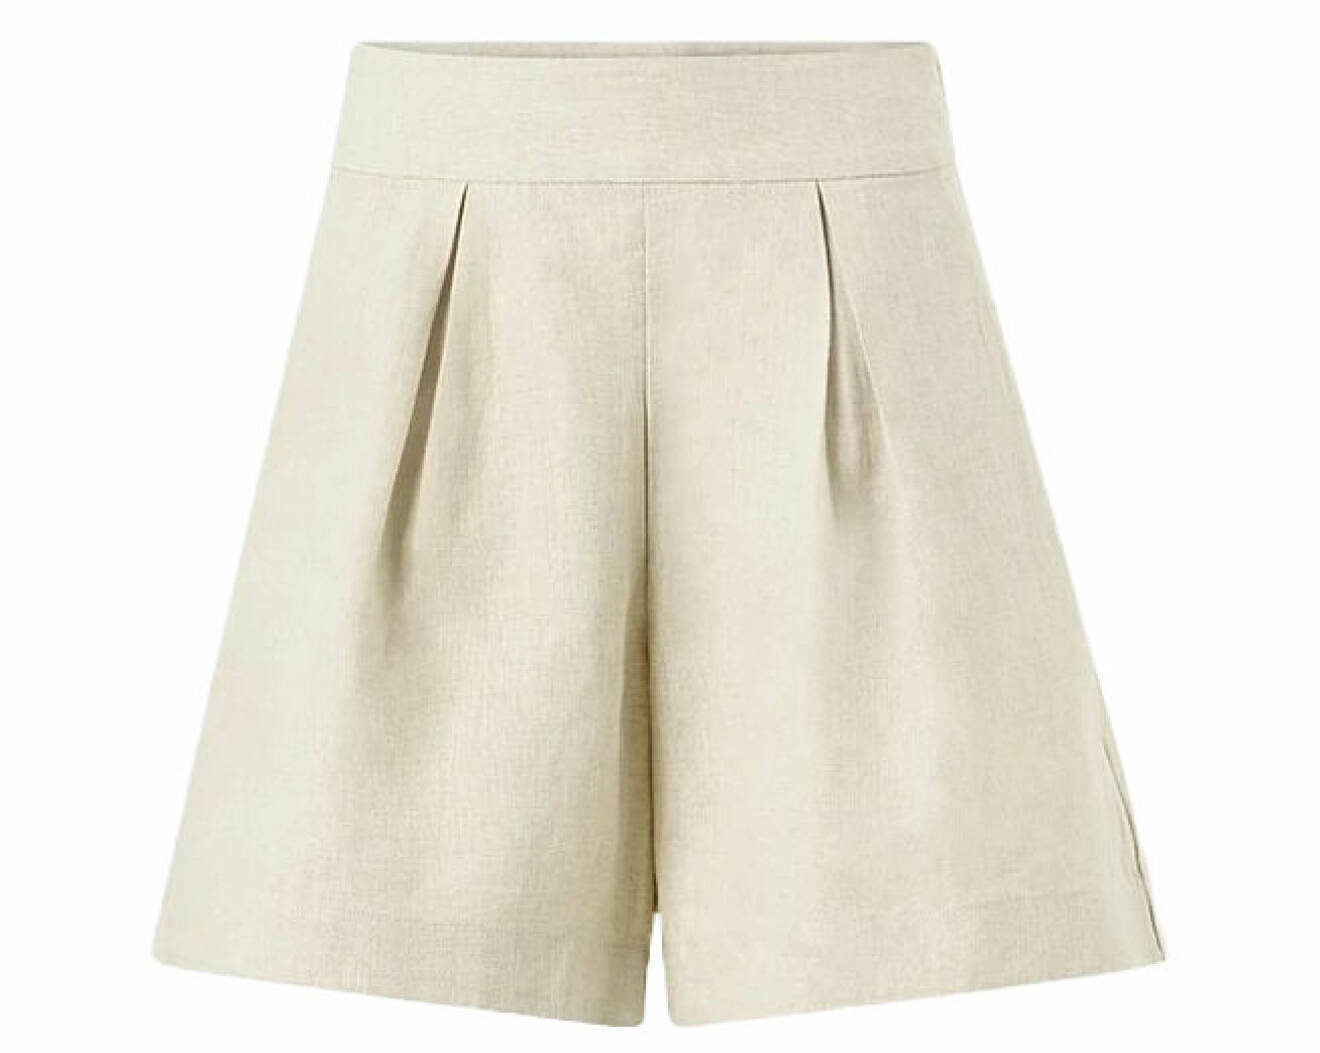 snygga shorts i linne från stylein